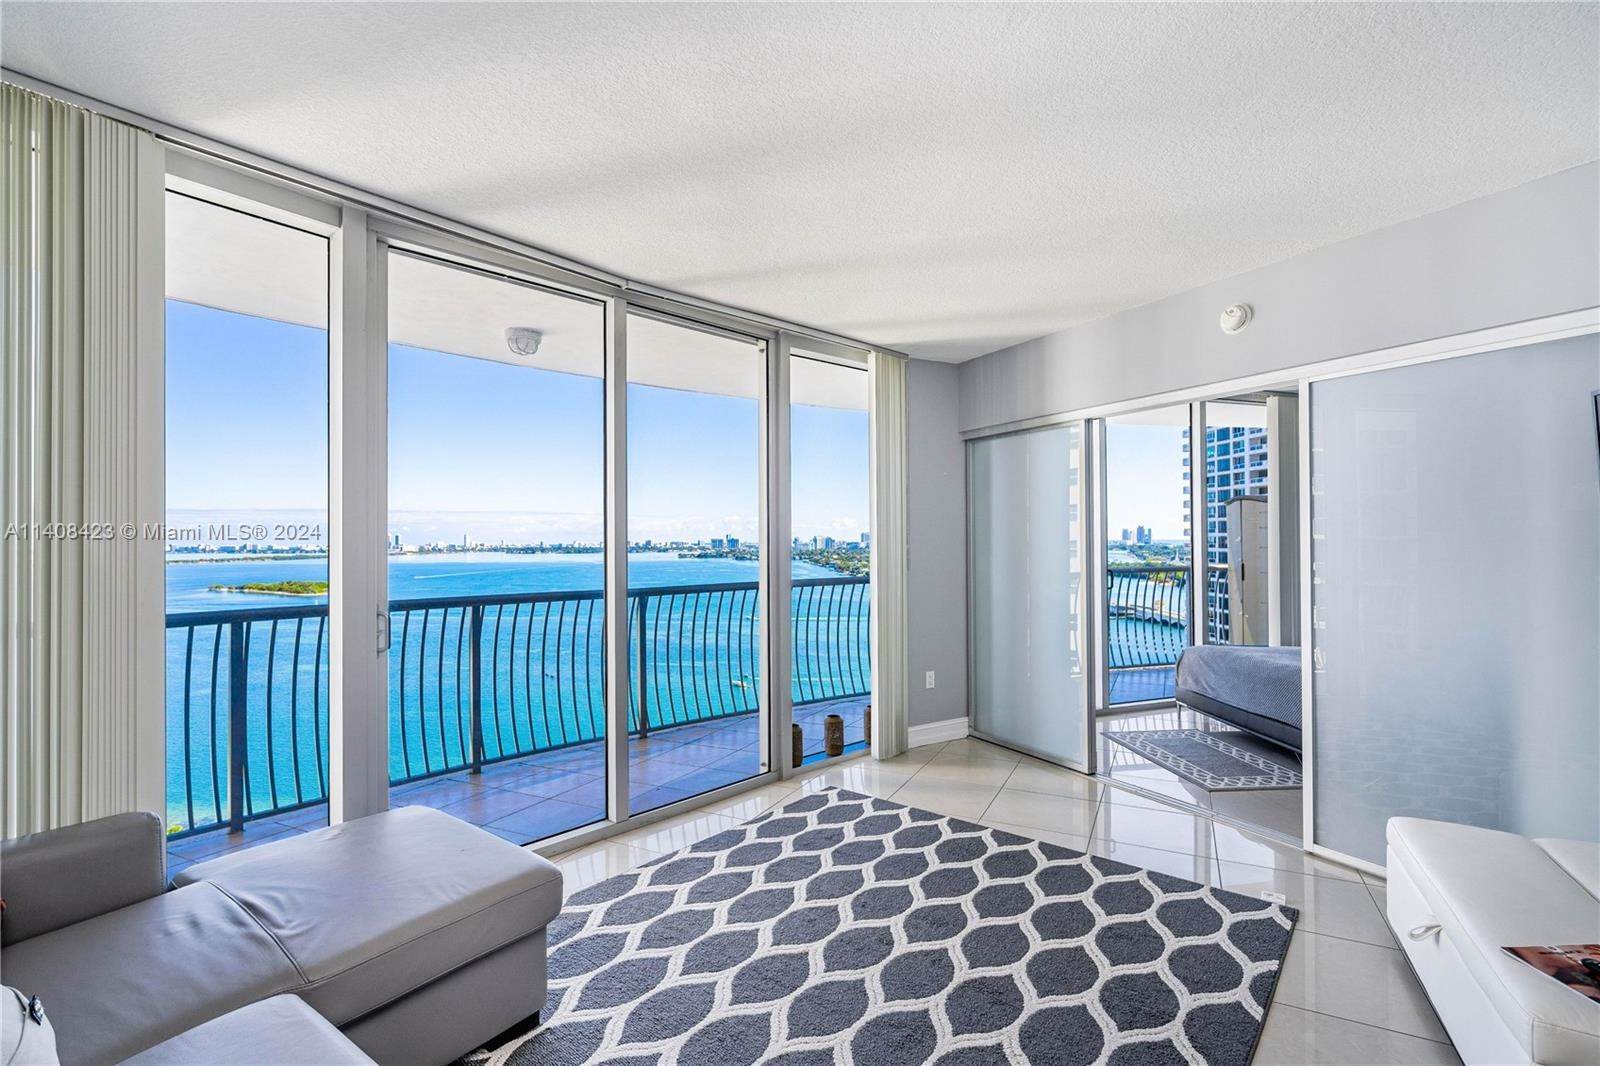 Condominiums at Edgewater, Miami, FL 33132